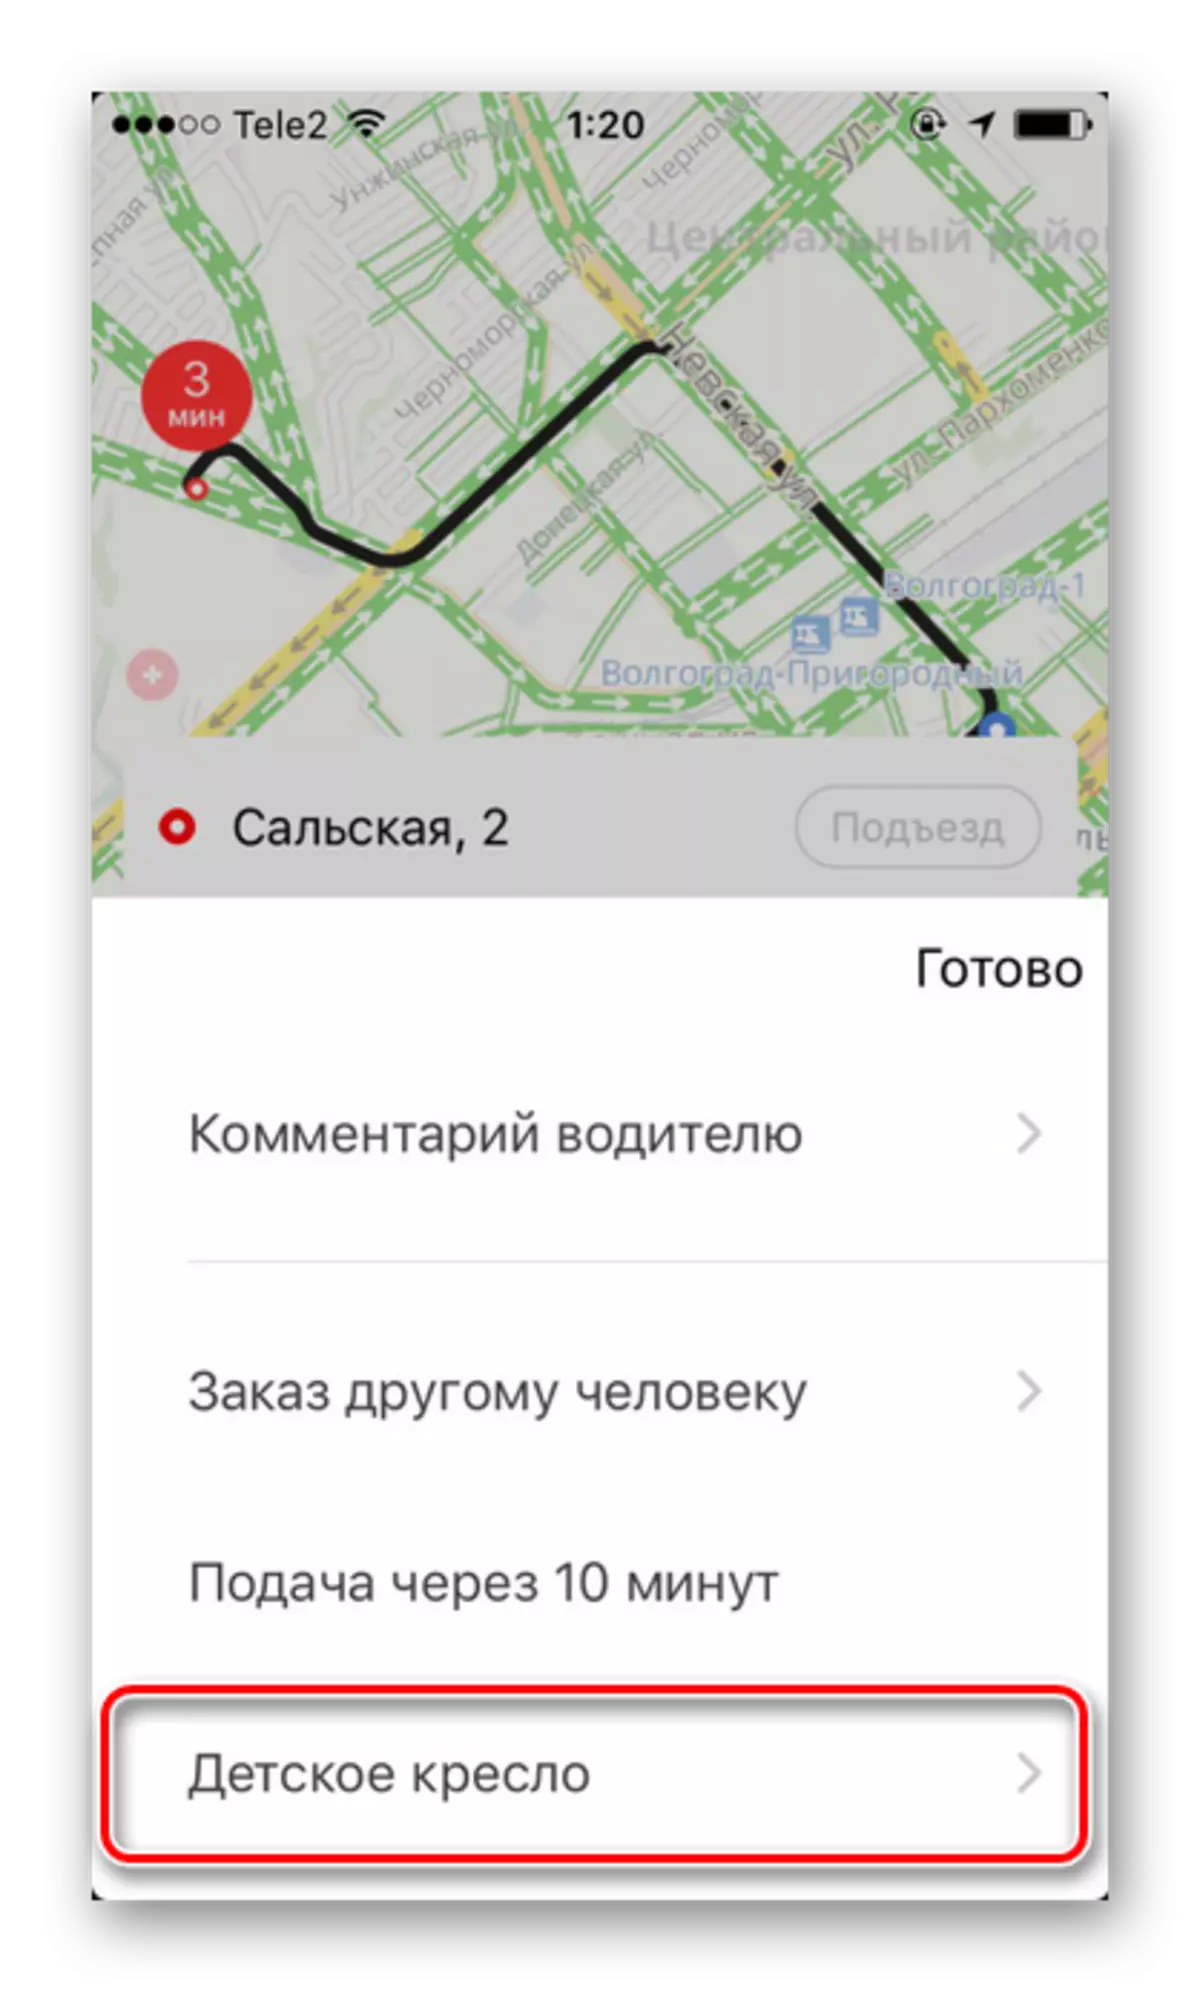 Adeeg dheeraad ah oo loogu talagalay bixinta guddoomiyaha carruurta ee Yandex.taxi on iPhone